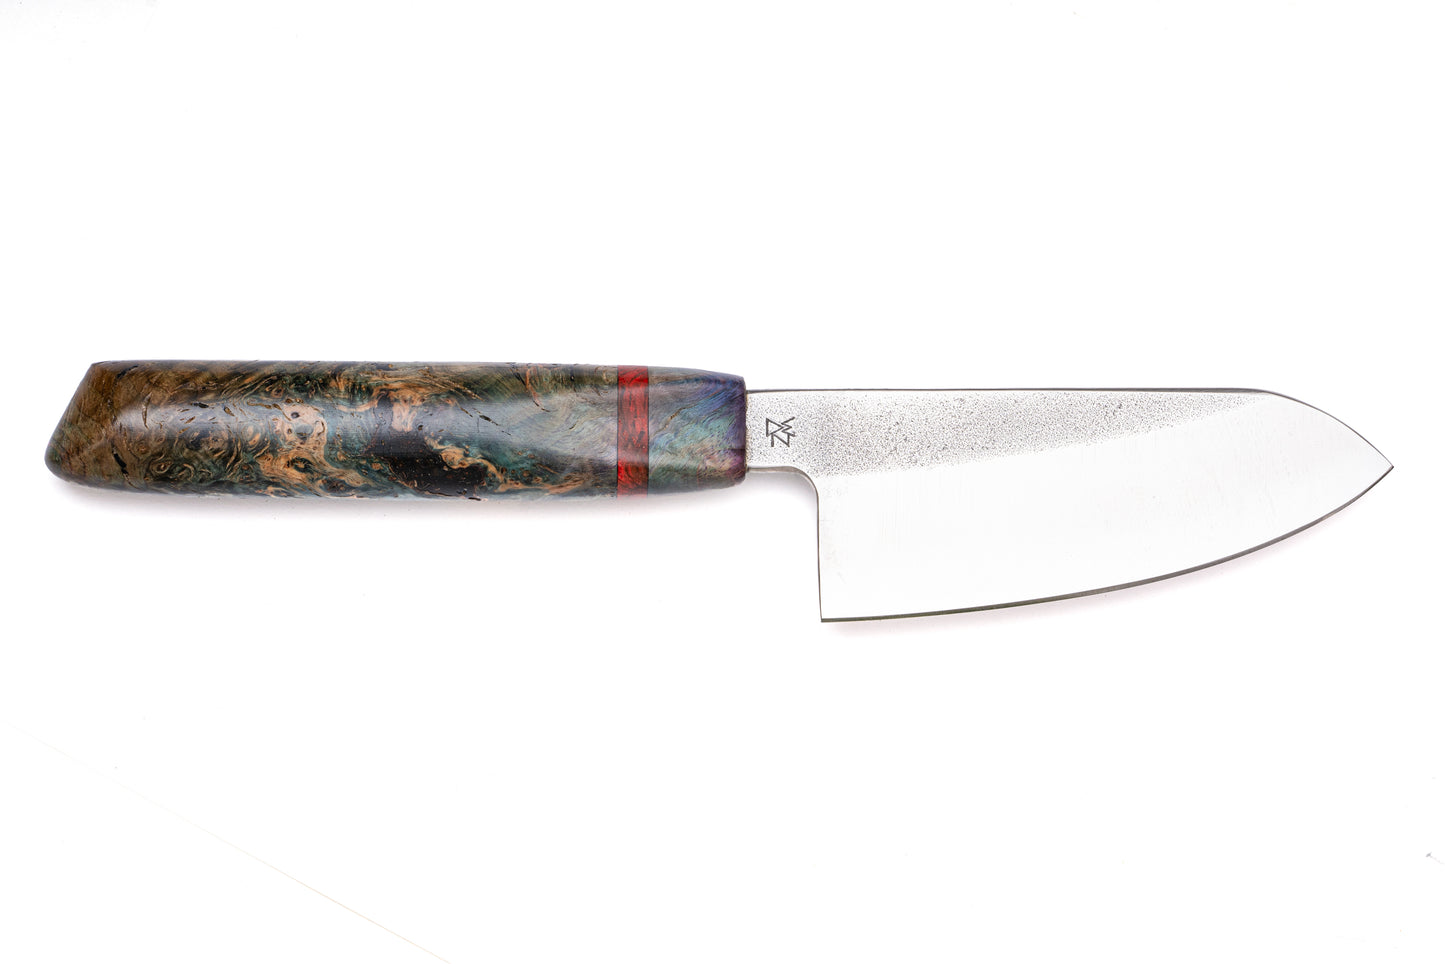 4" Mini Chef's Knife with Burl handle